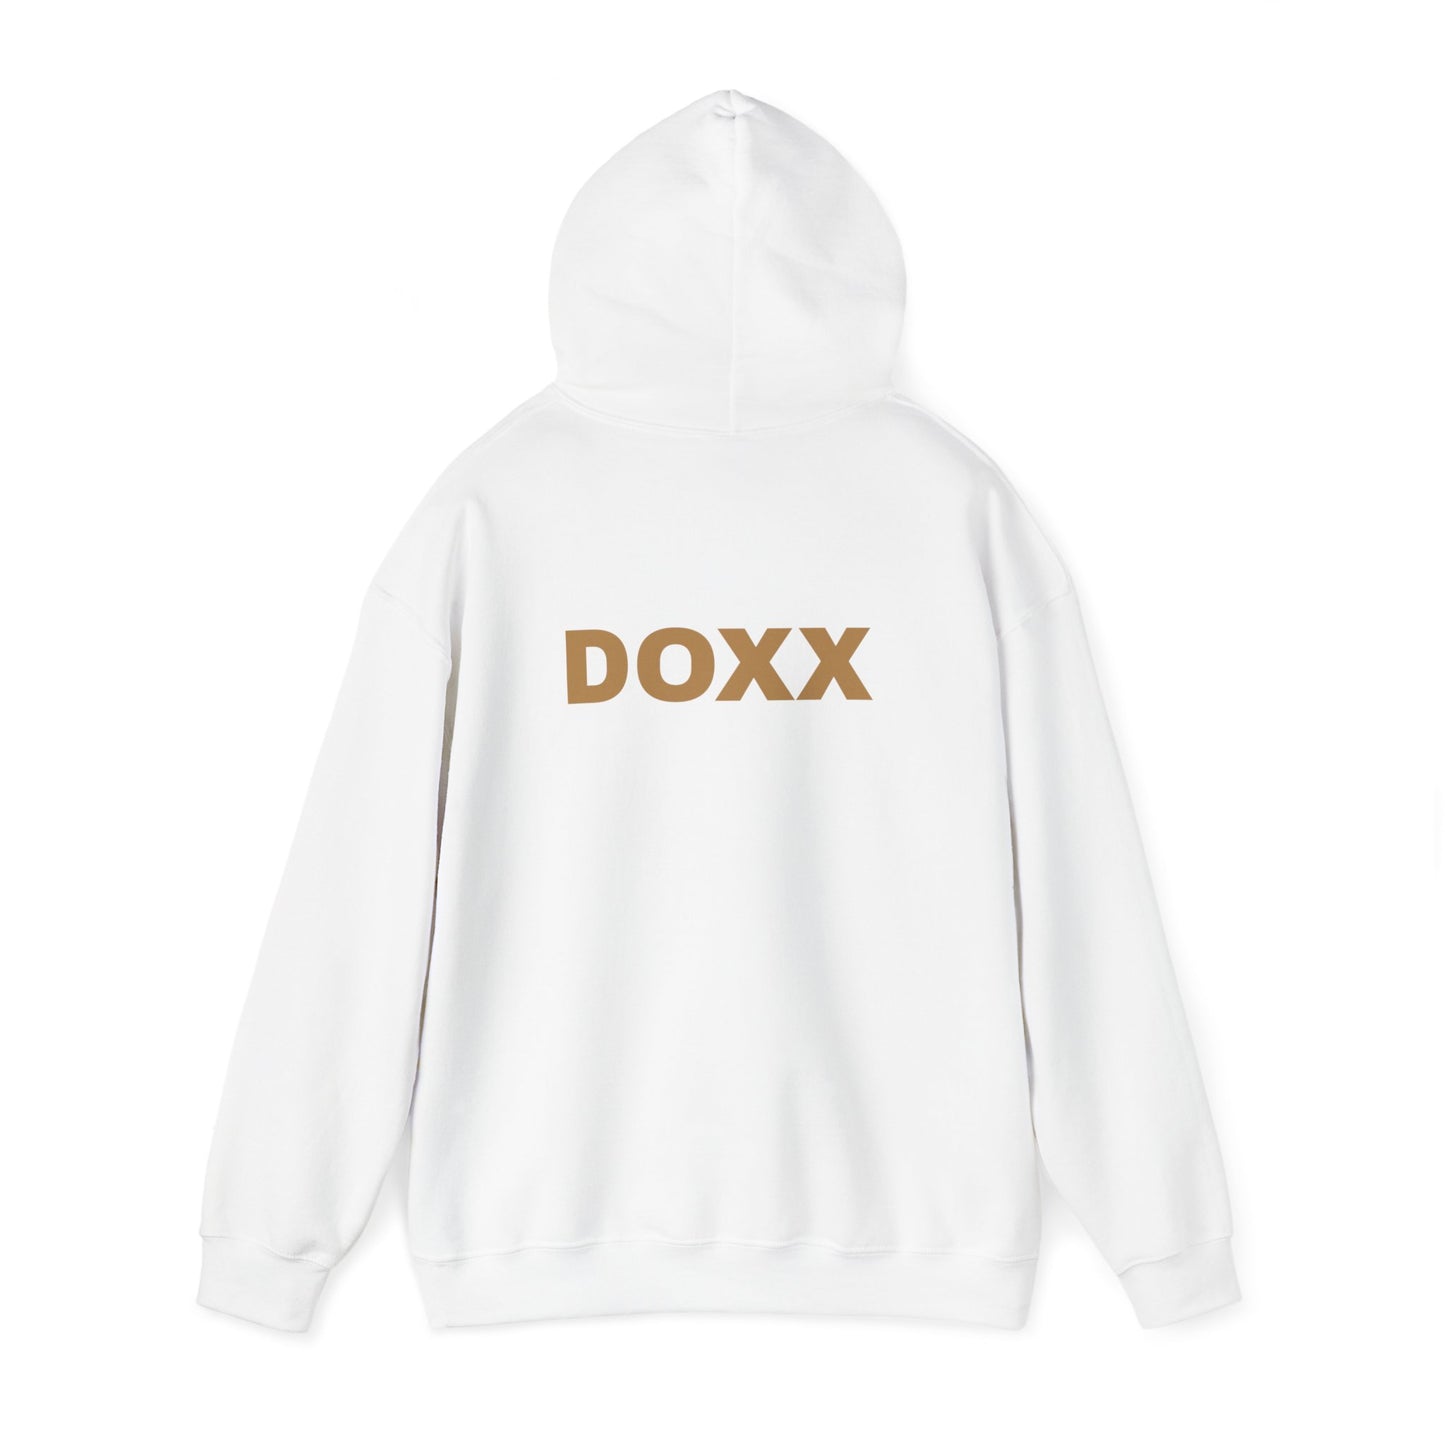 DOXX Unisex Heavy Blend™ Hoodie